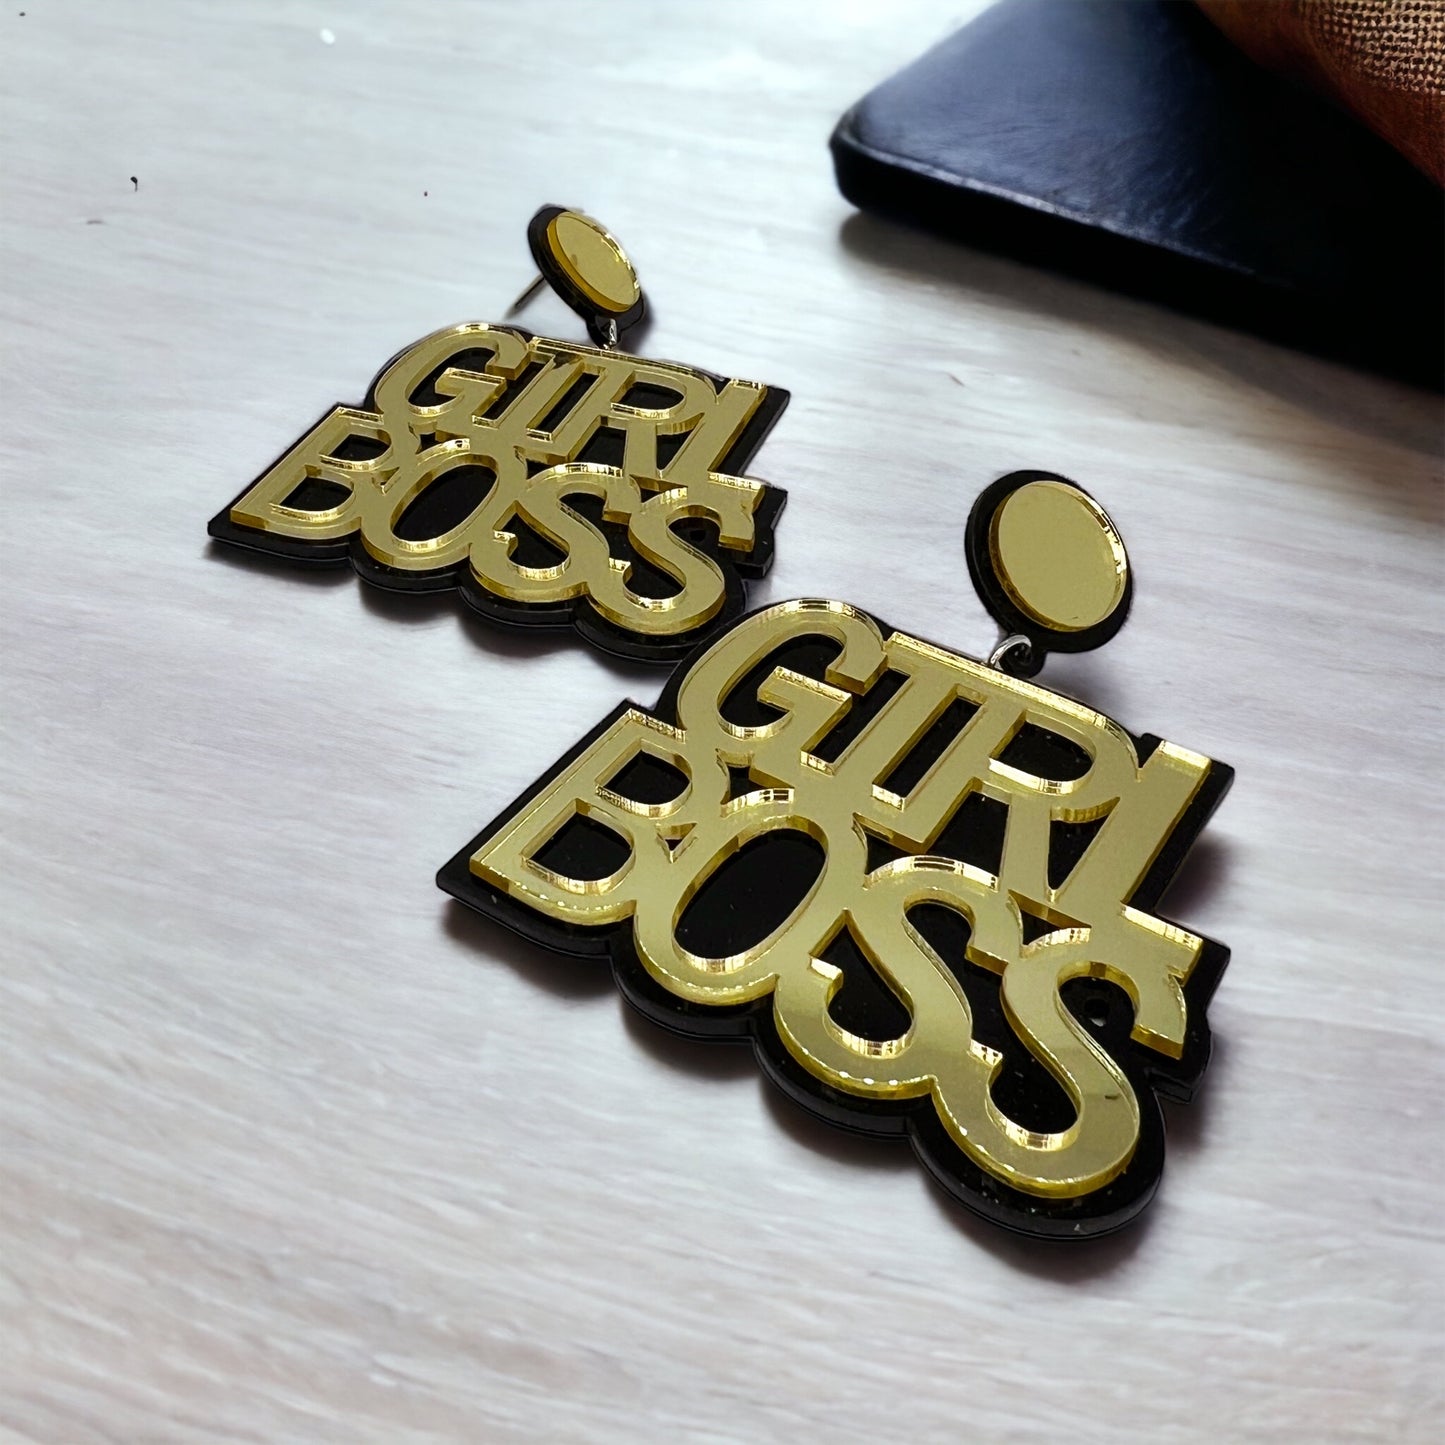 Girl Boss Earrings - Boss Babe, Sassy Earrings, Fun Earrings, Sweet and Sassy, Girl Power